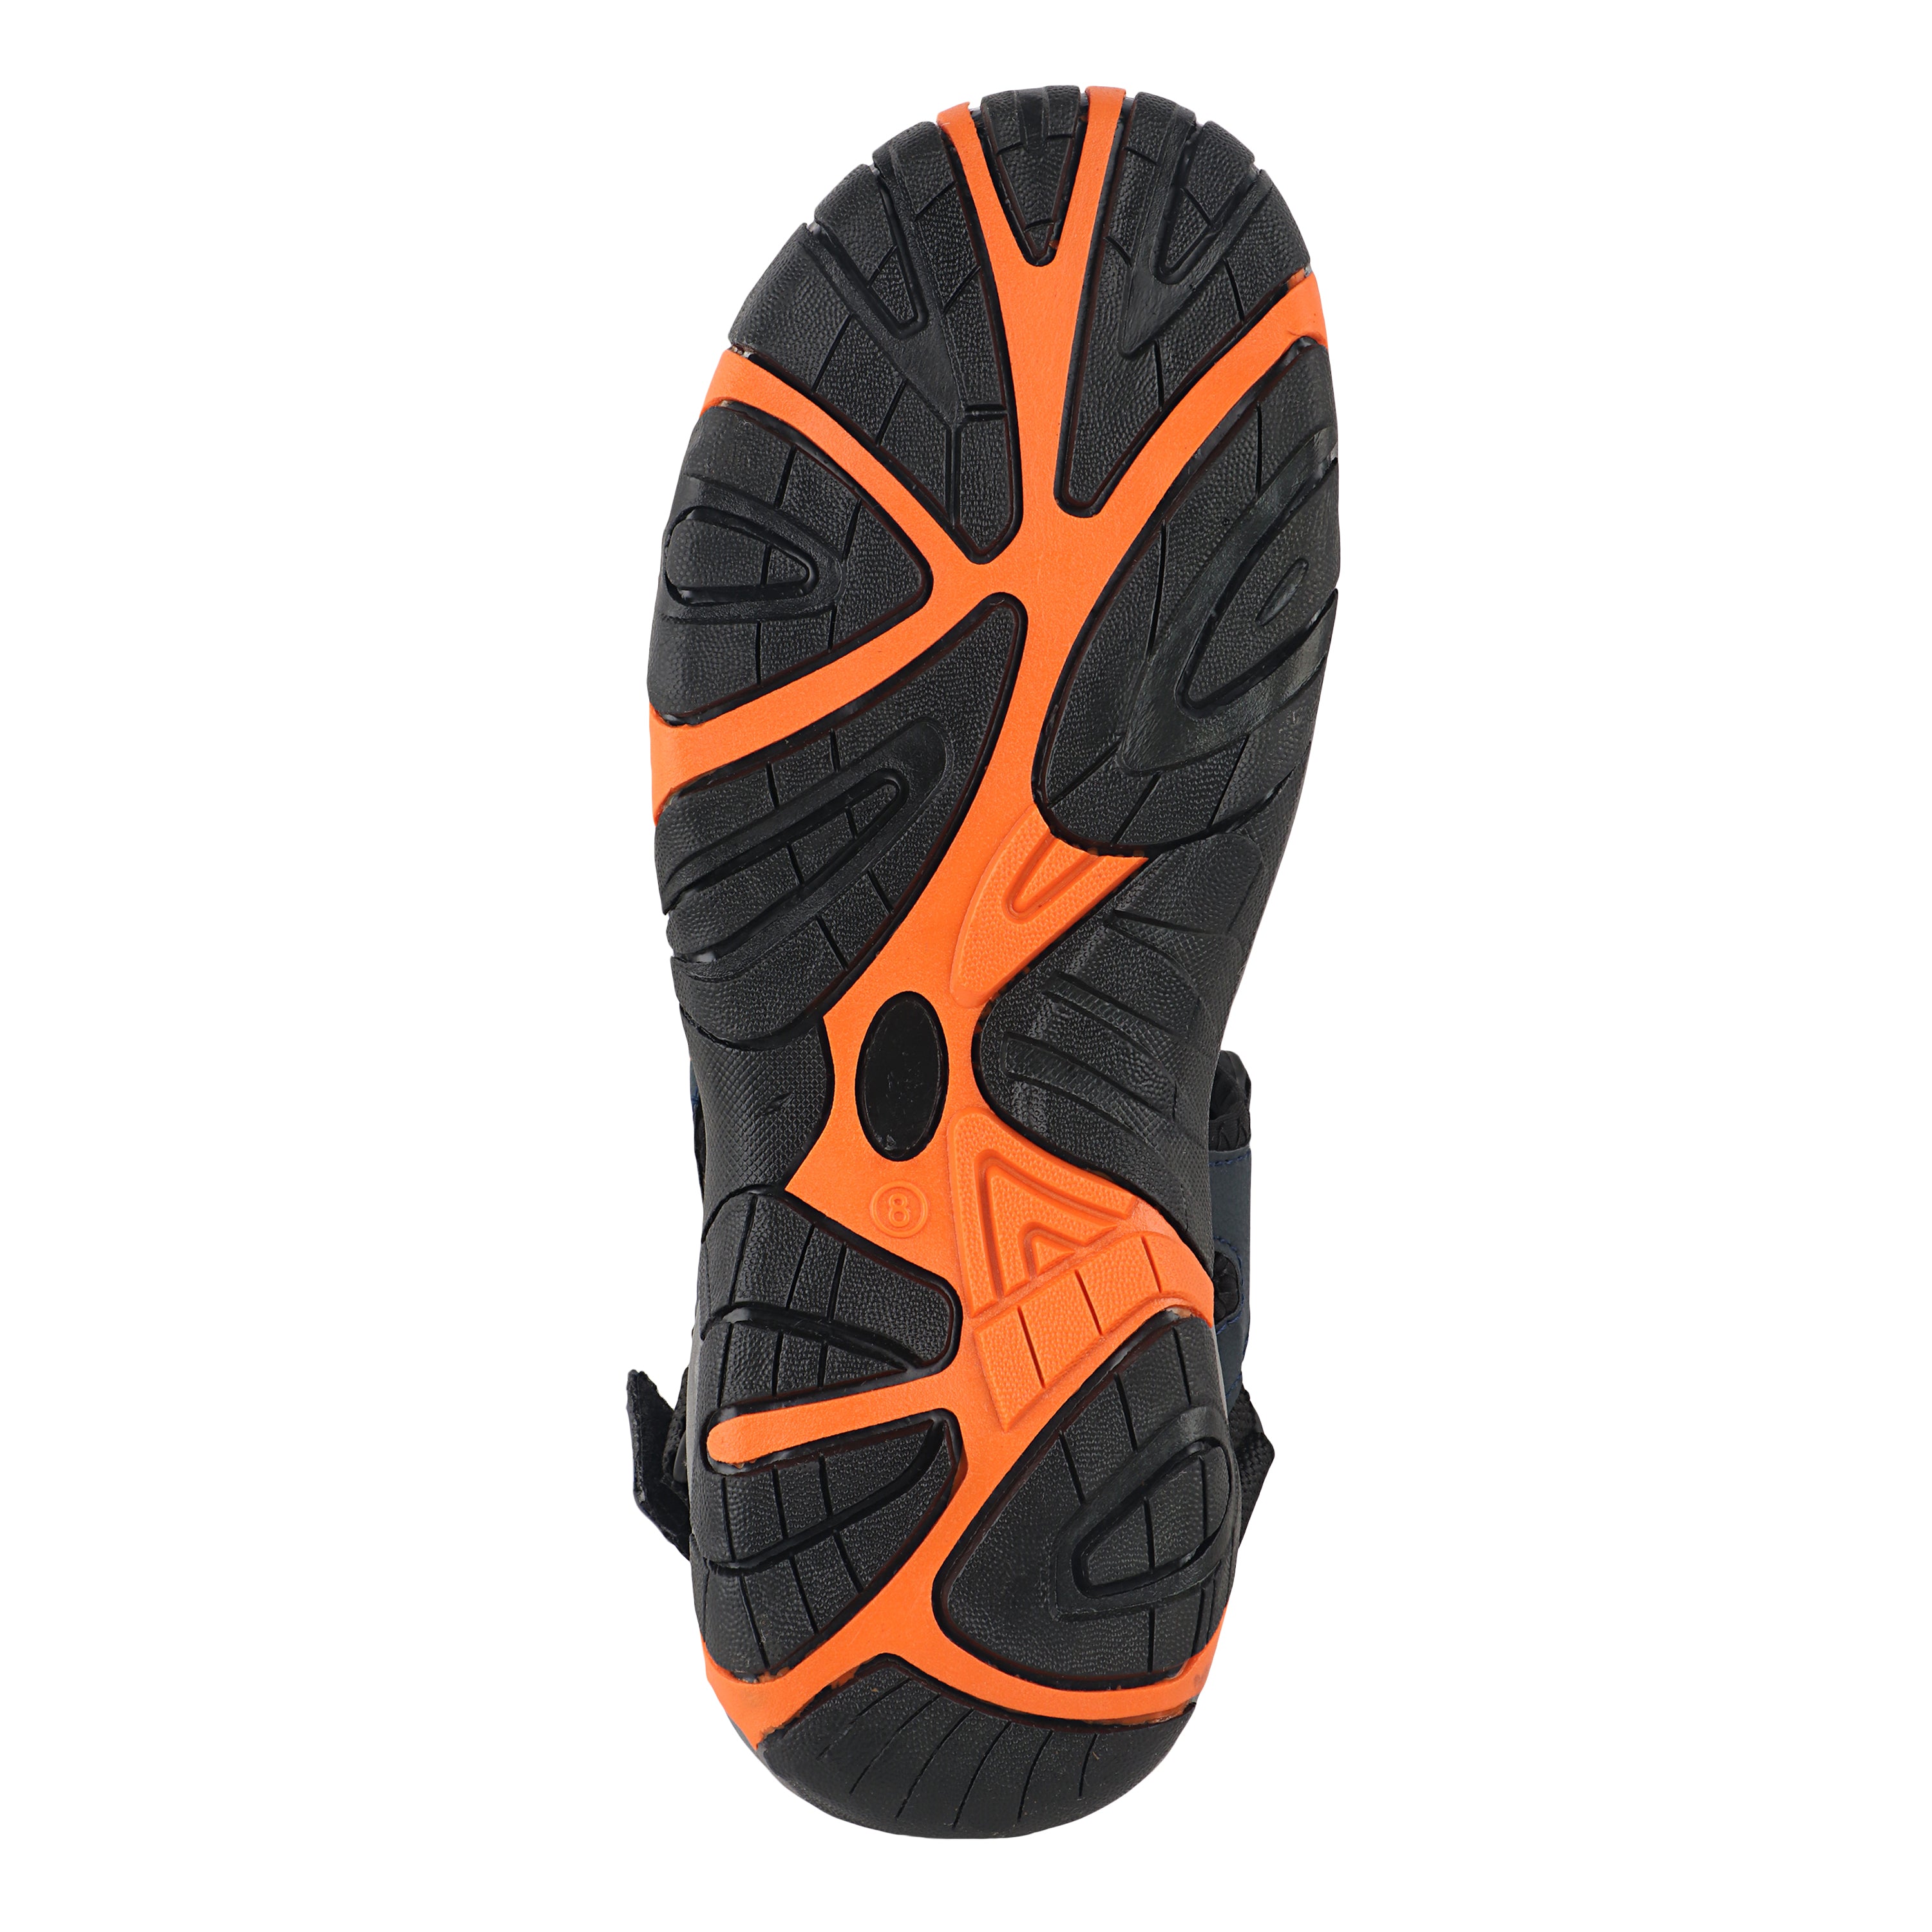 Fuel Prime Sandals For Men's (Navy-Orange)